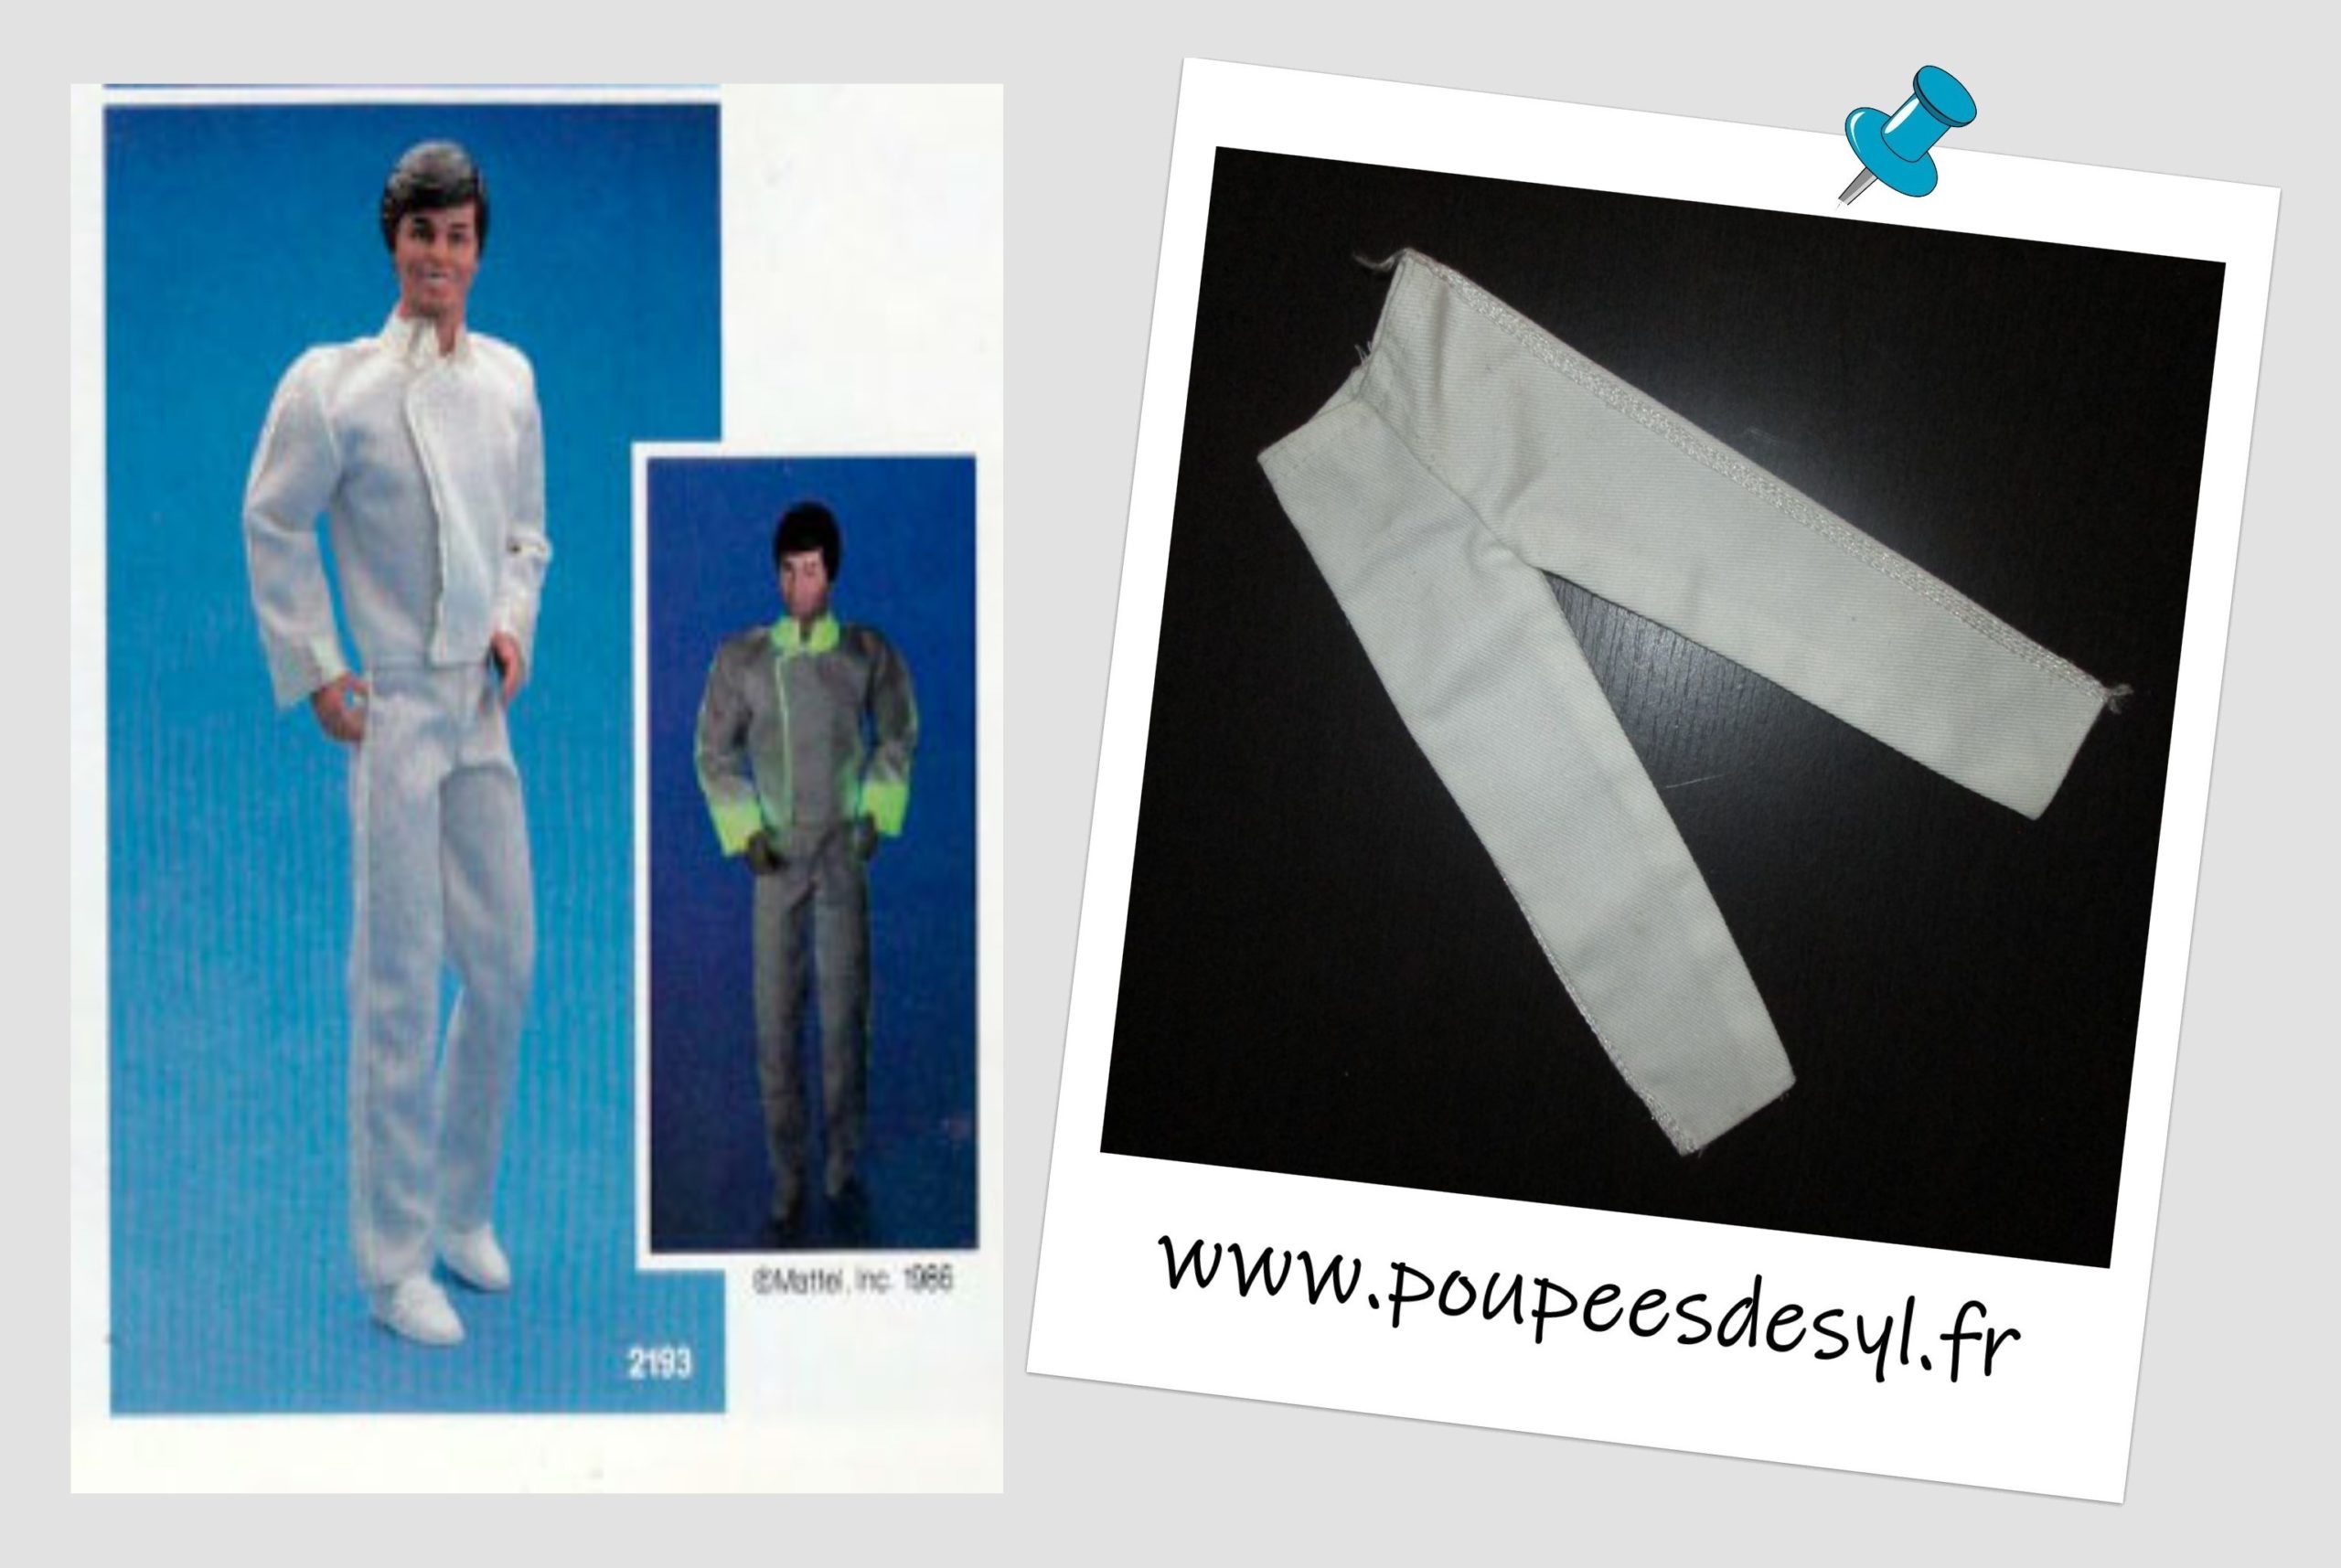 KEN – Pantalon blanc – DREAM GLOW – #2193 – 1985